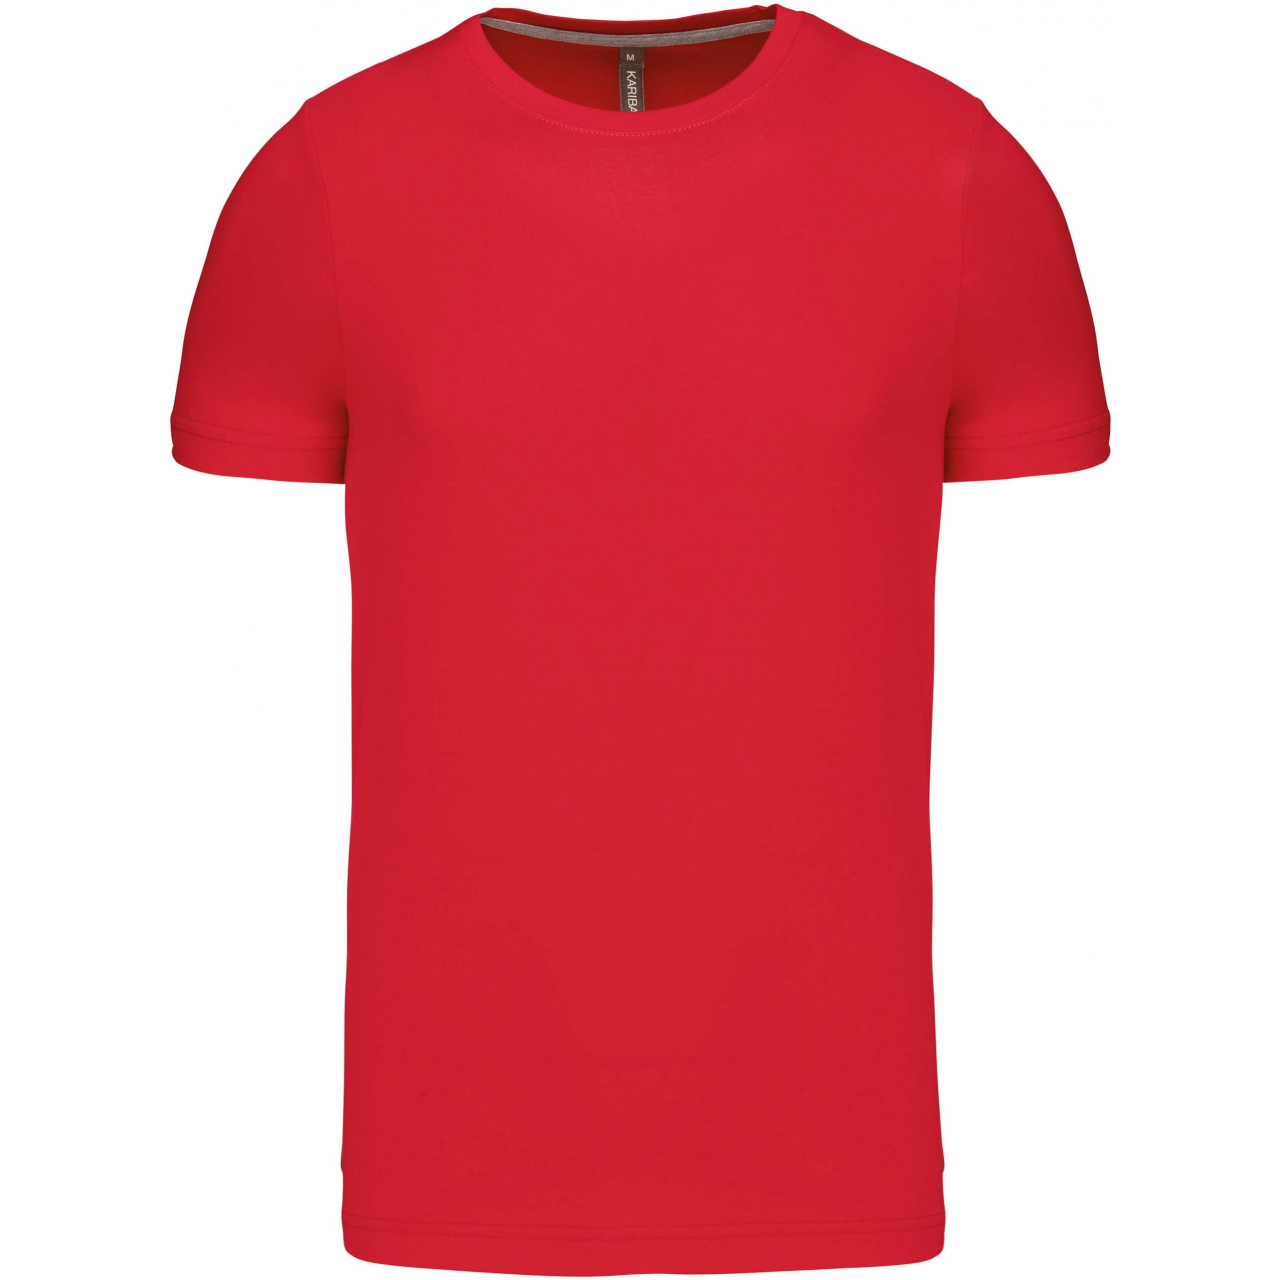 Pánské tričko Kariban krátký rukáv - červené, S